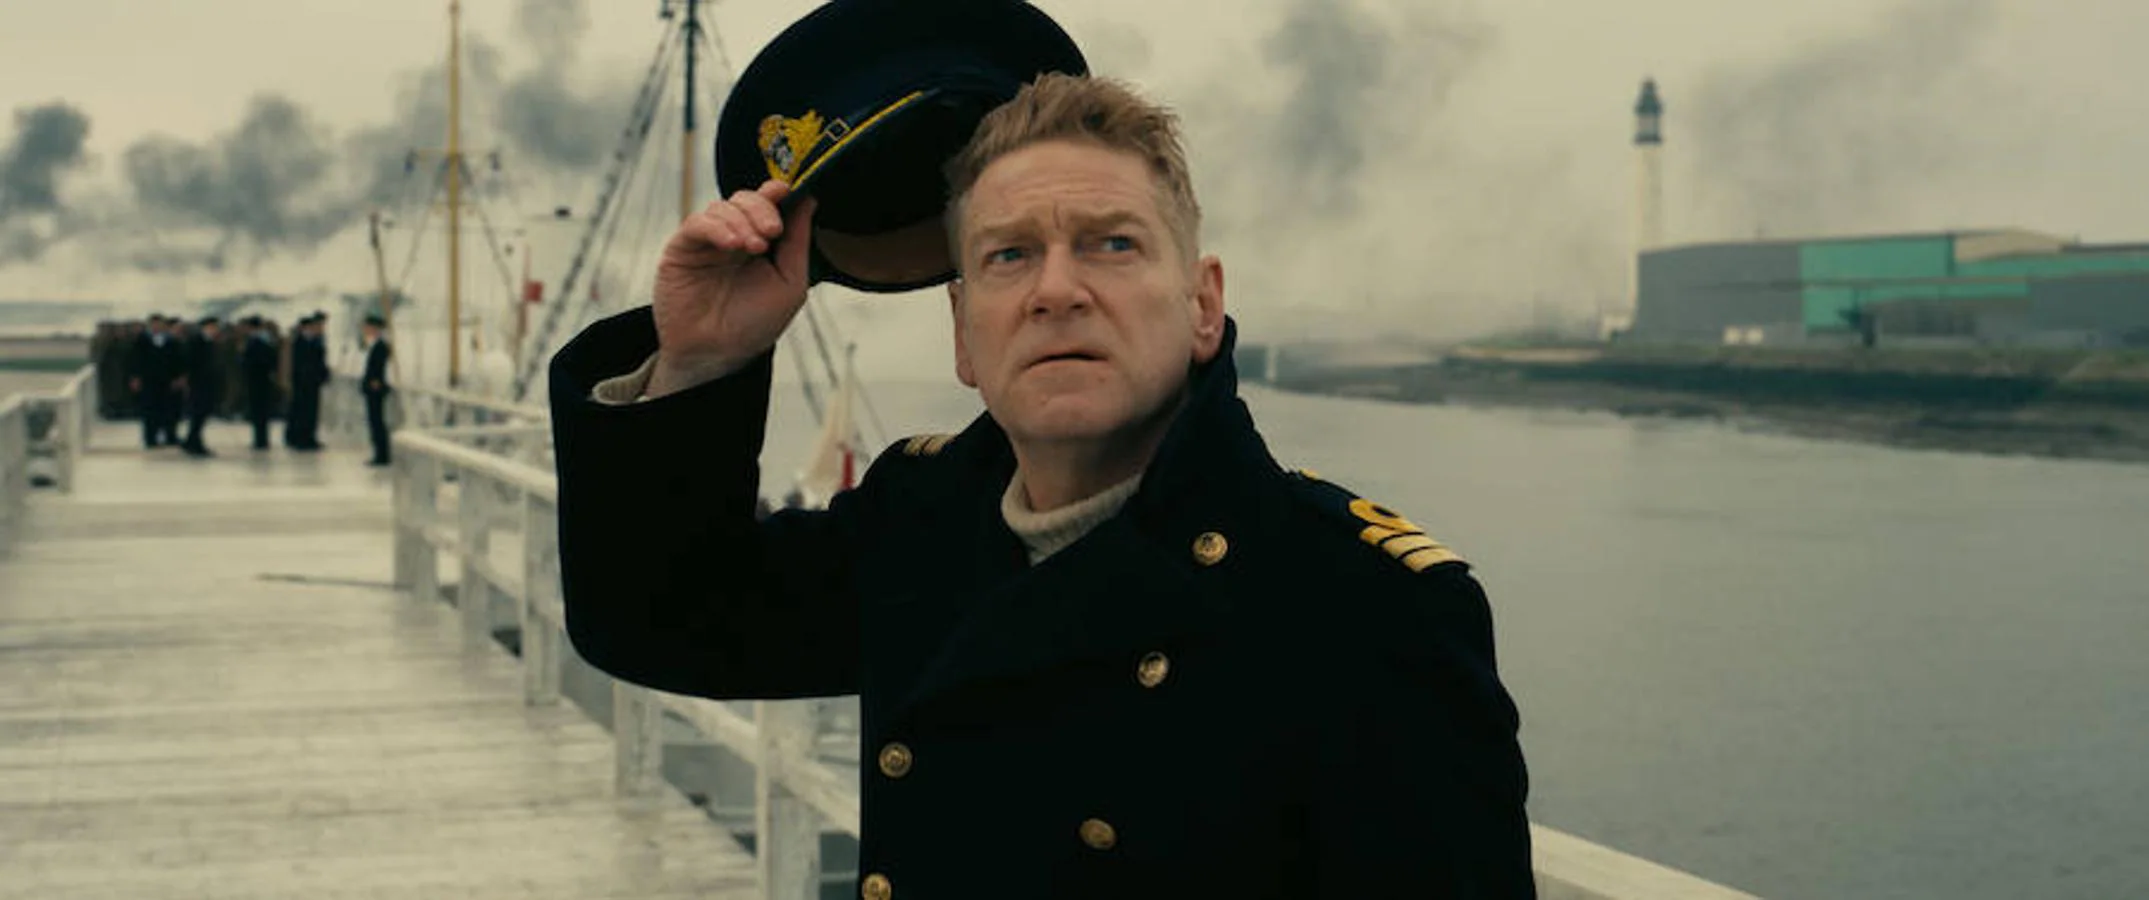 15. En el Dunkerque de Nolan, el actor Kenneth Branagh  interpreta al Comandante Bolton como el oficial de más alto rango que aparece en el filme